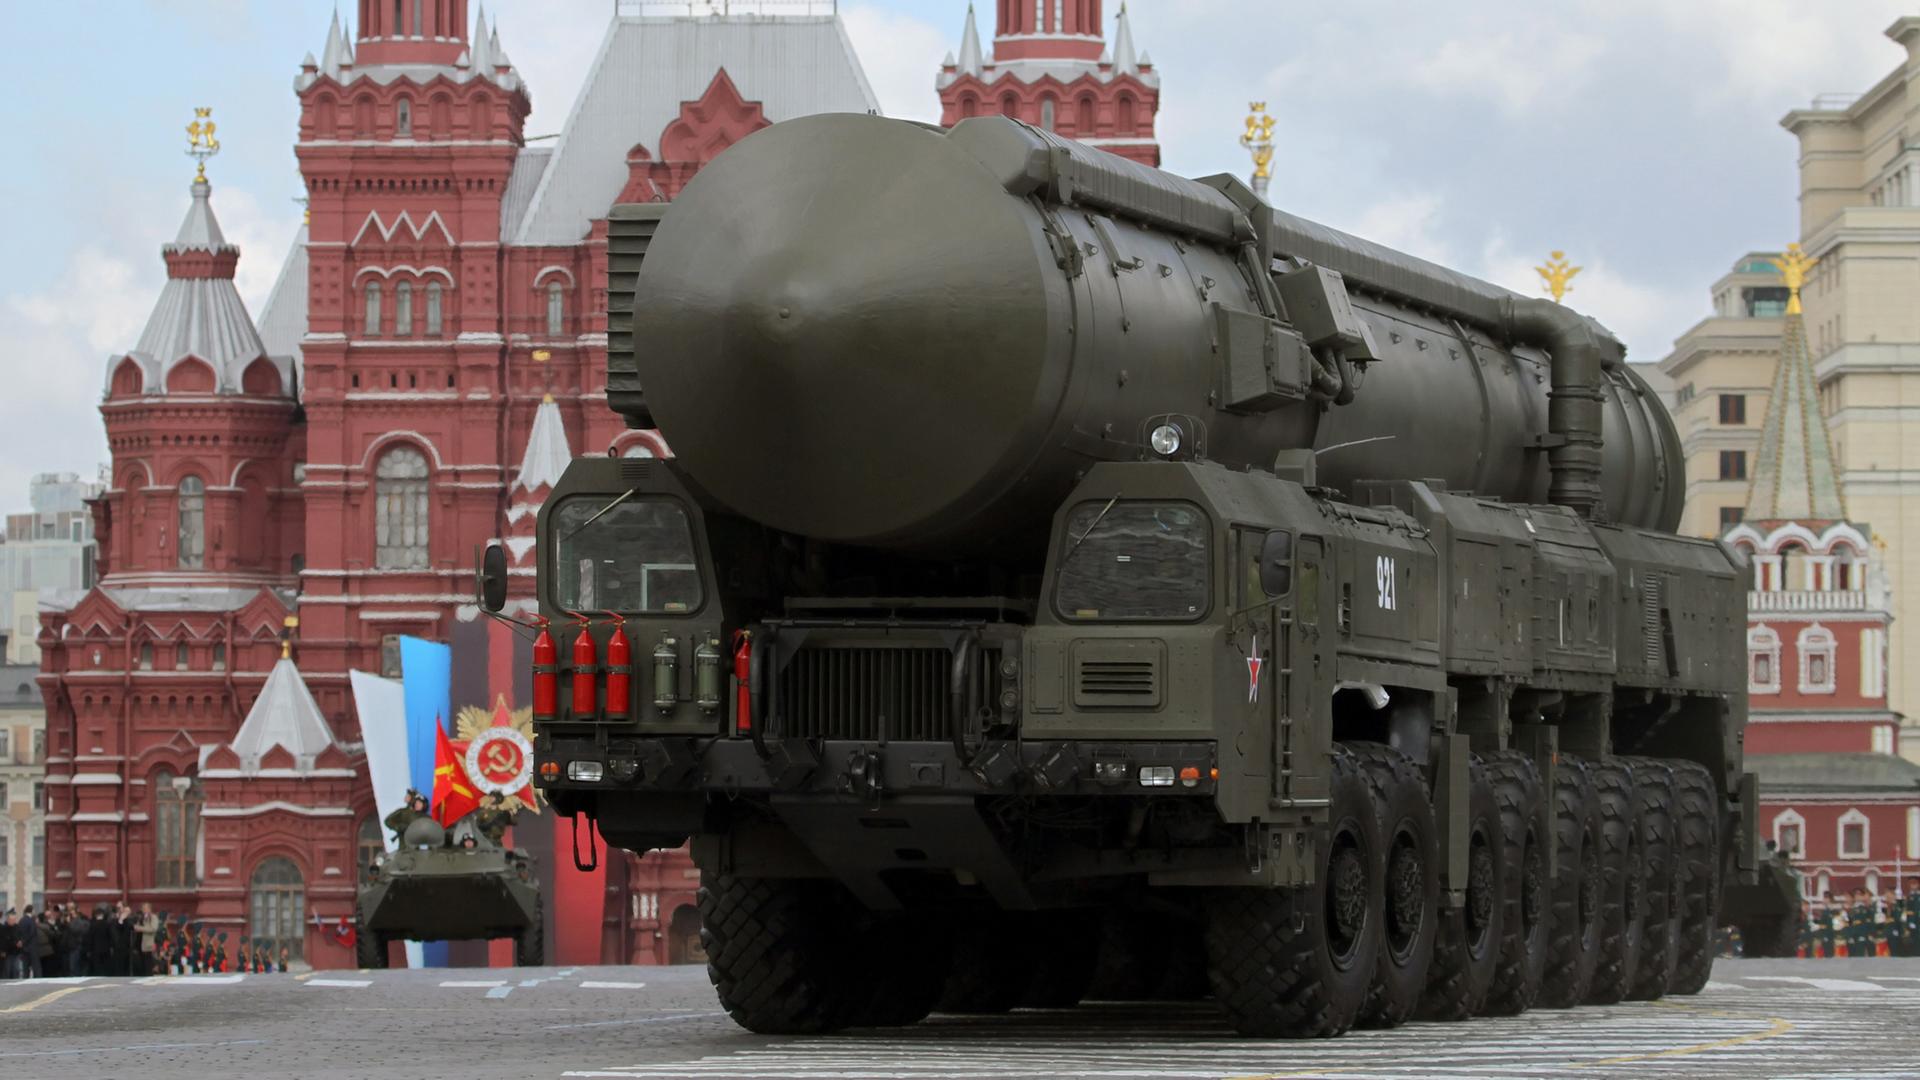 Washington - Russland werfen USA vor, Basis für Atomwaffen-Abkommen "New Start" zerstört zu haben